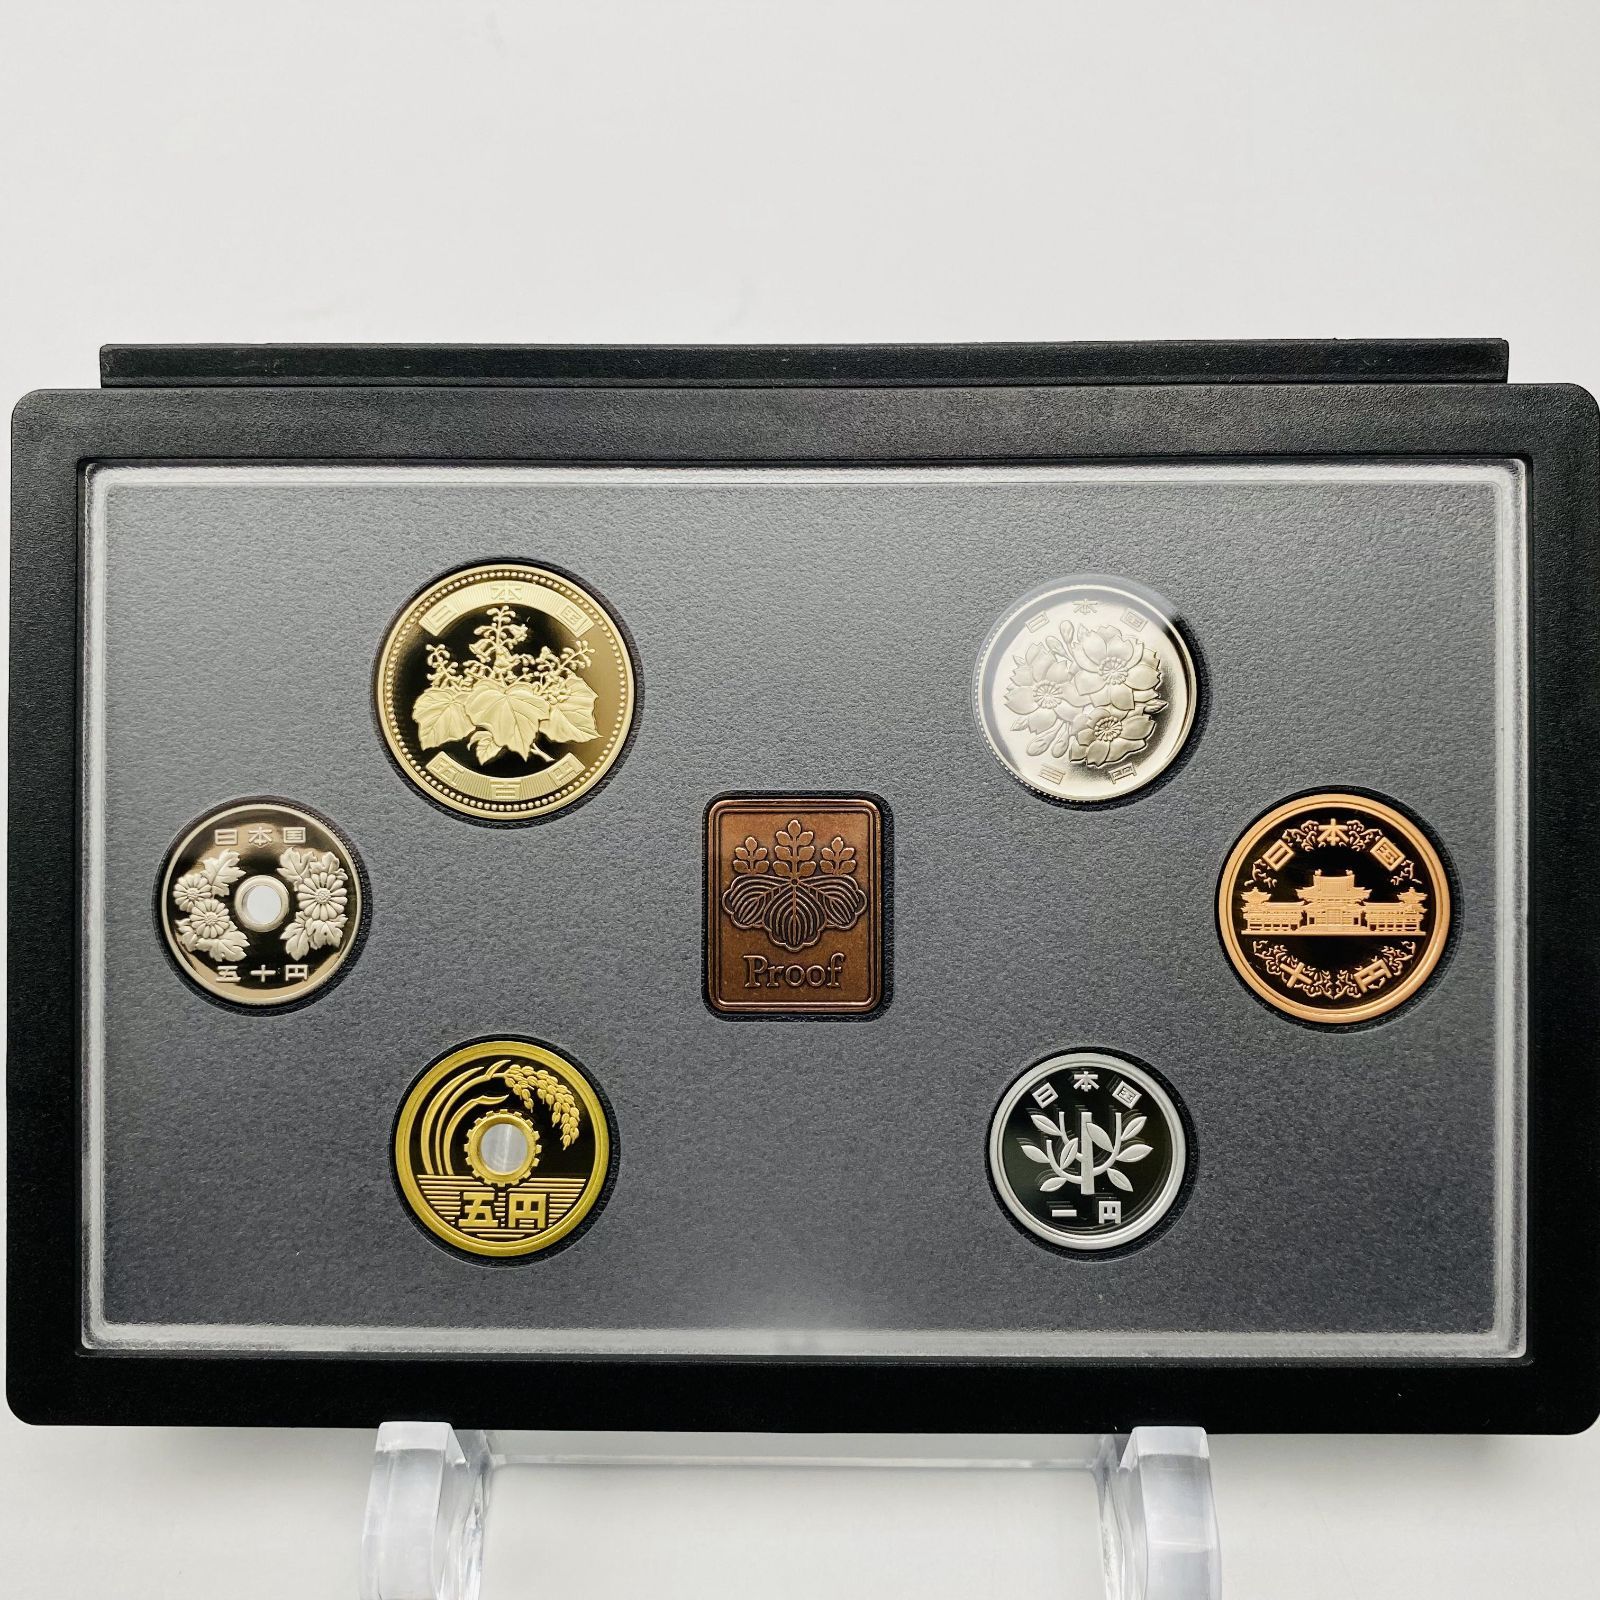 プルーフ貨幣セット 2012年 平成24年 額面666円 年銘板有 全揃い